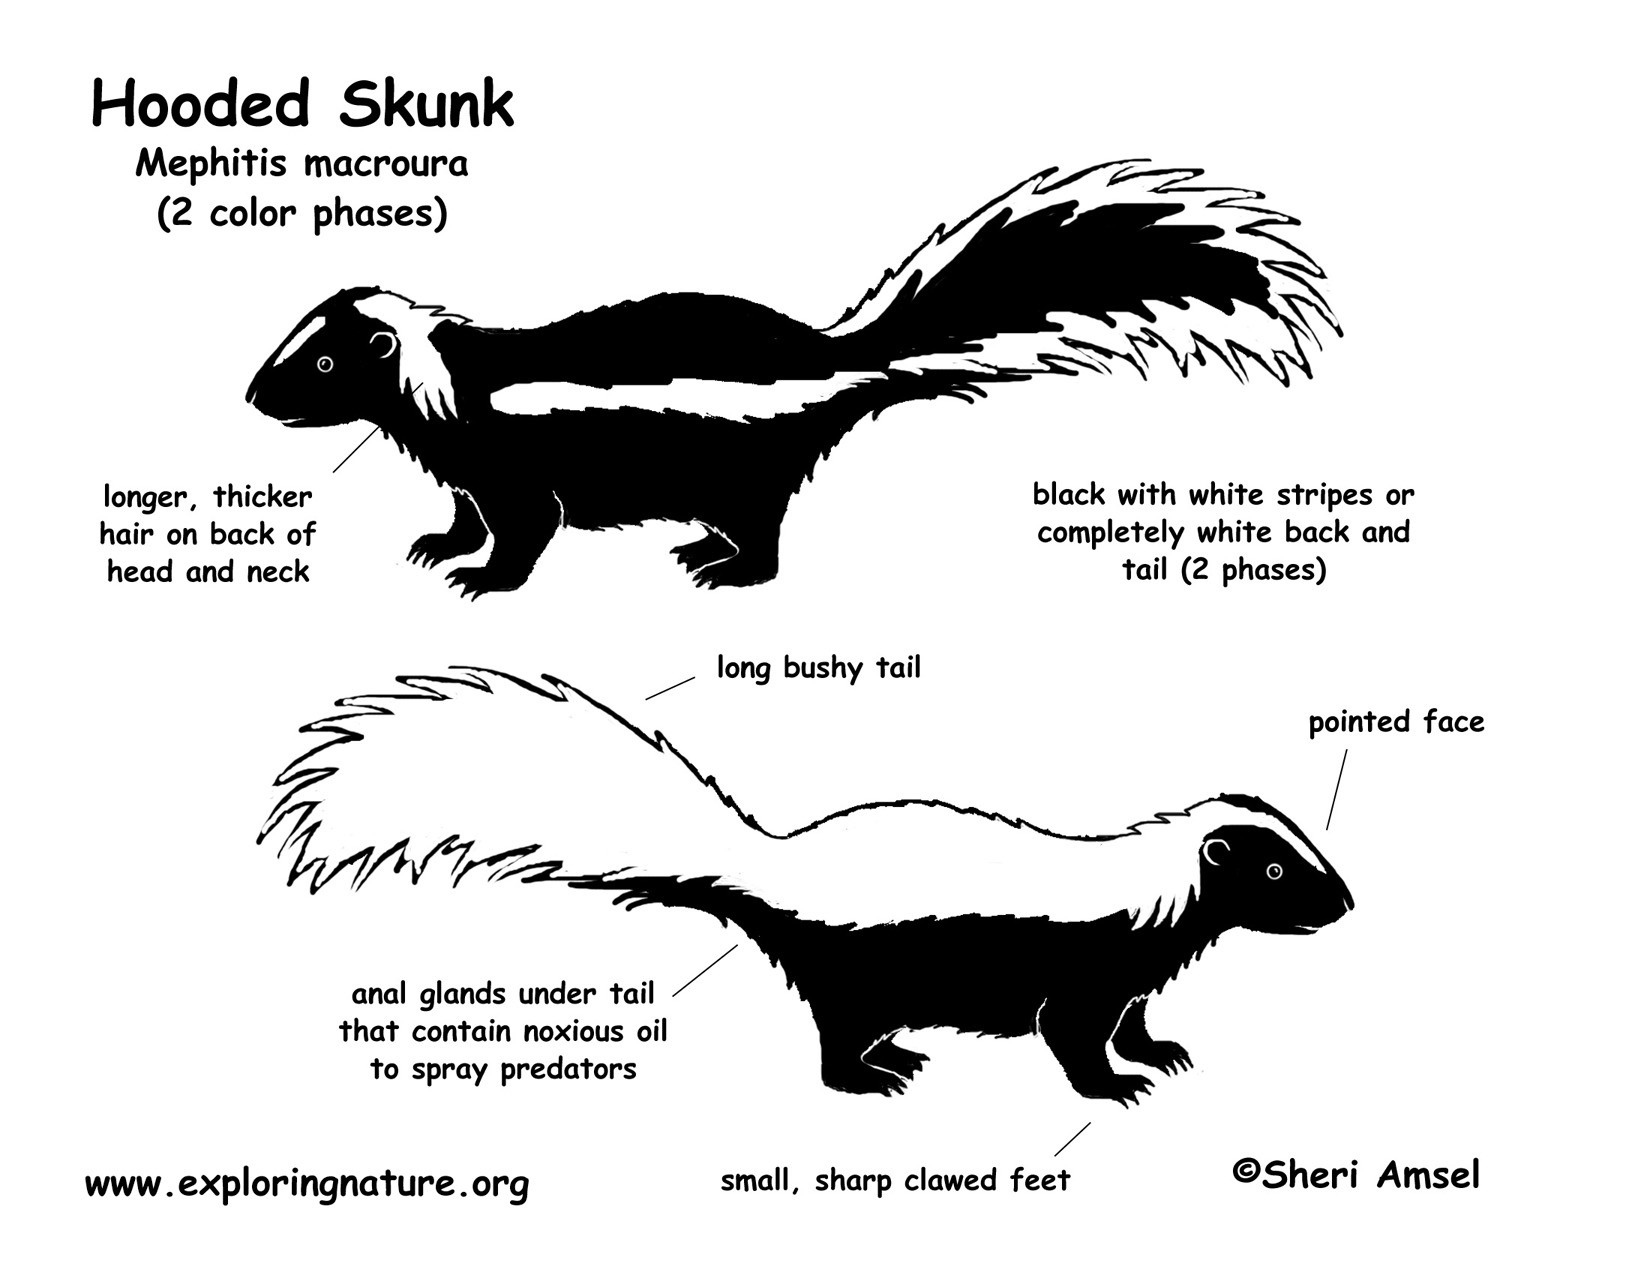 Skunk (Hooded)